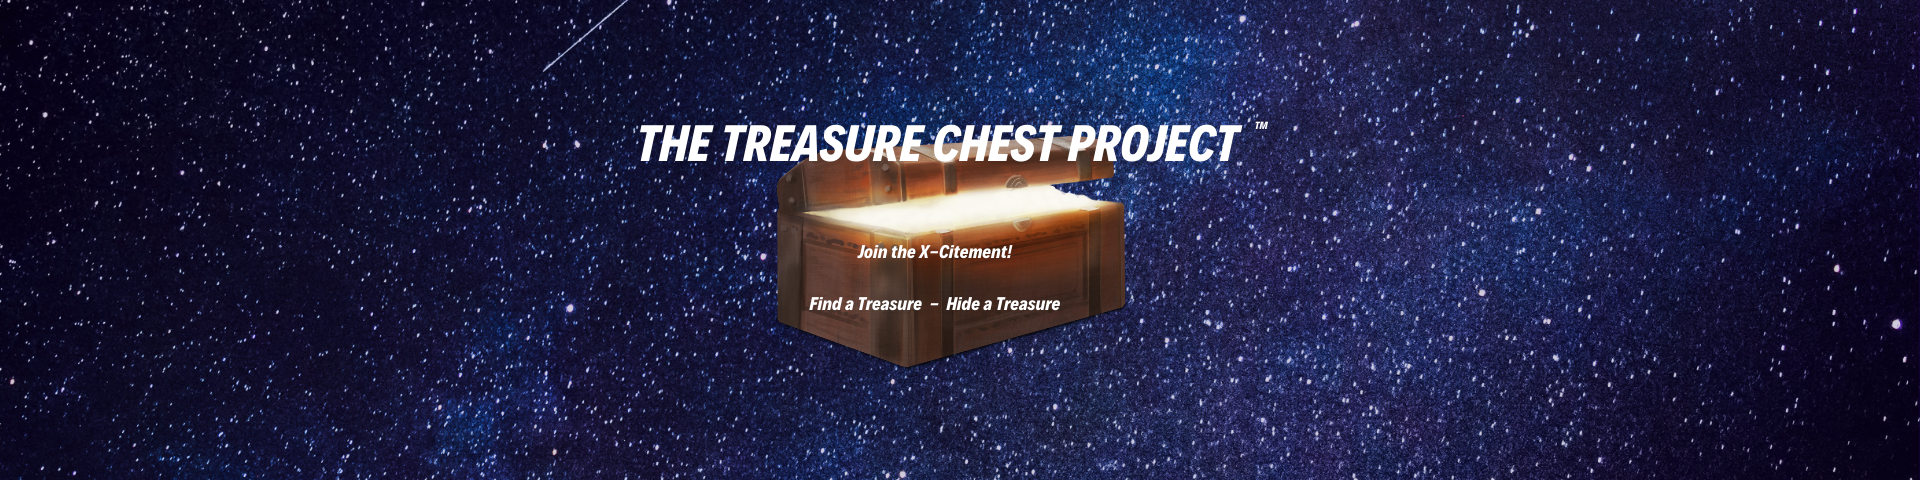 Hiding a Treasure for The Treasure Chest Project